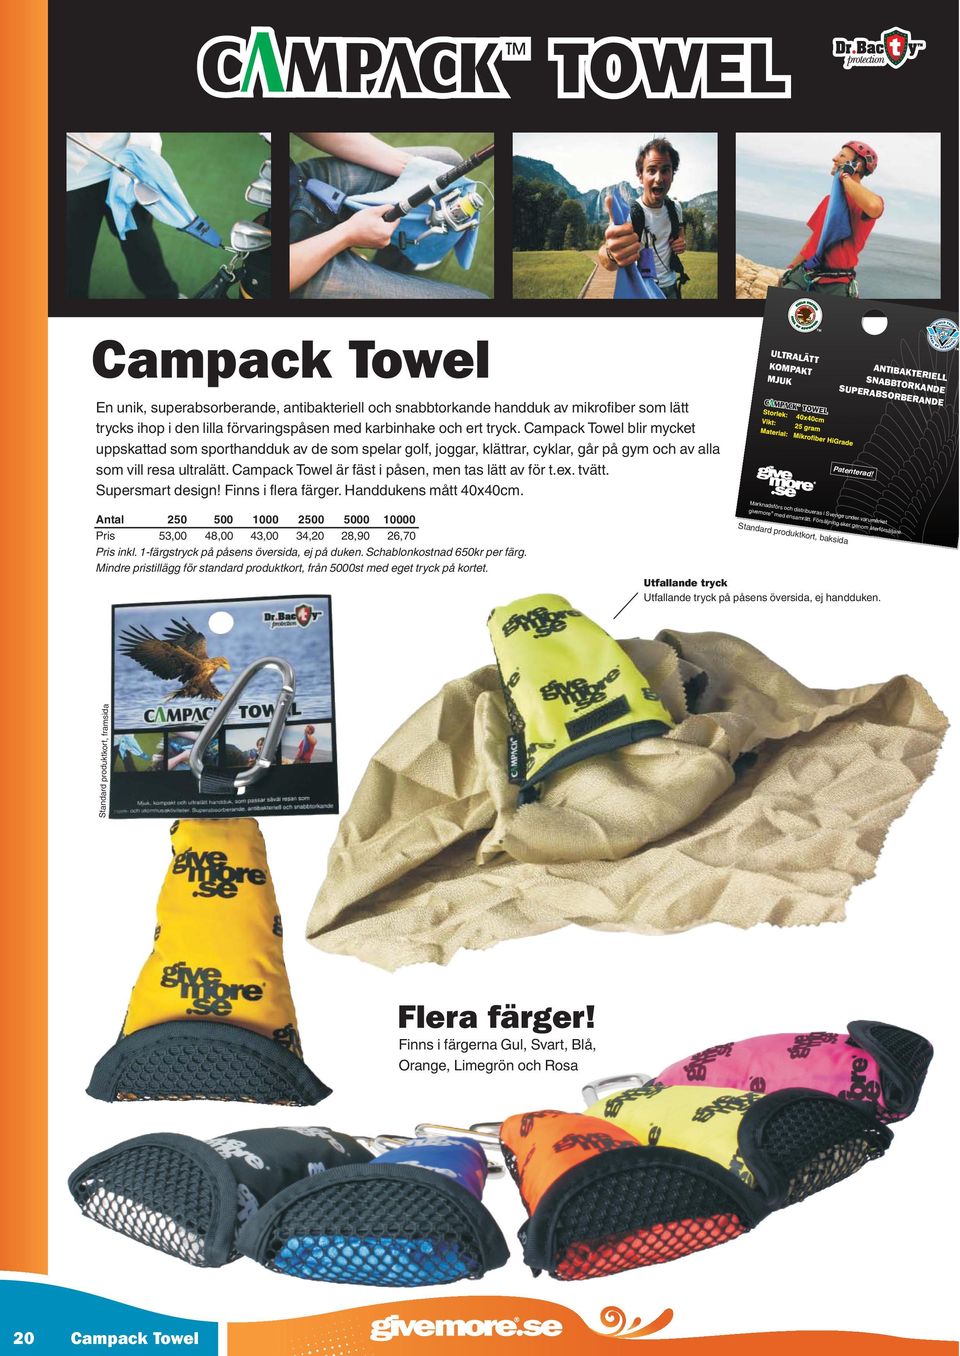 Campack Towel är fäst i påsen, men tas lätt av för t.ex. tvätt. Supersmart design! Finns i flera färger. Handdukens mått 40x40cm.